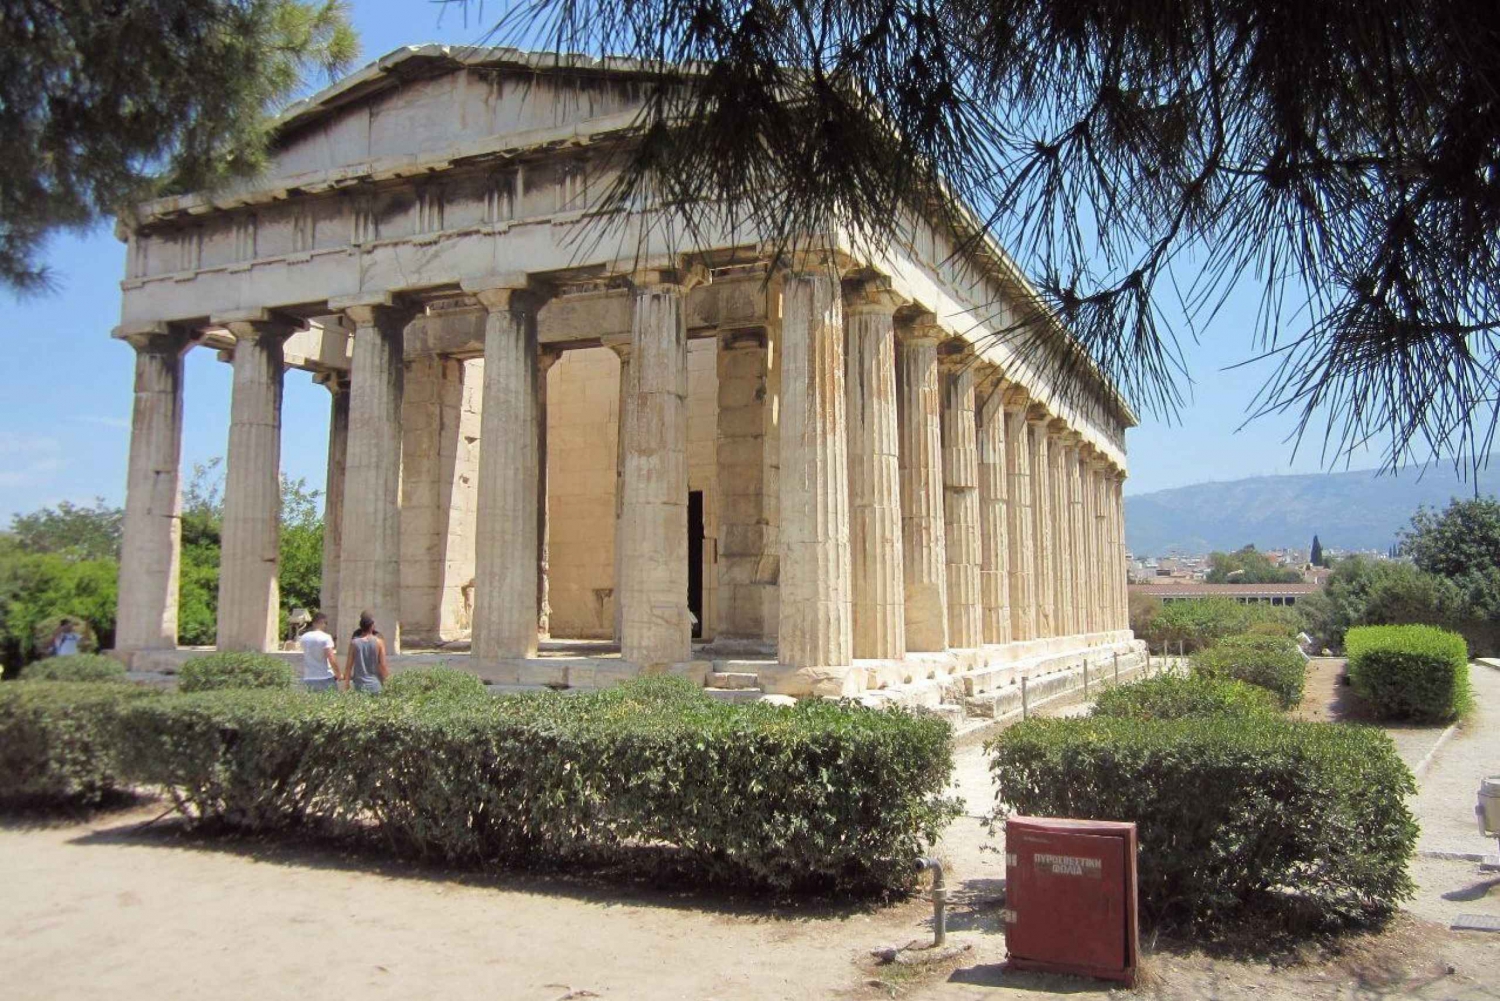 Atene: Audioguida per un'avventura attraverso 11 siti antichi